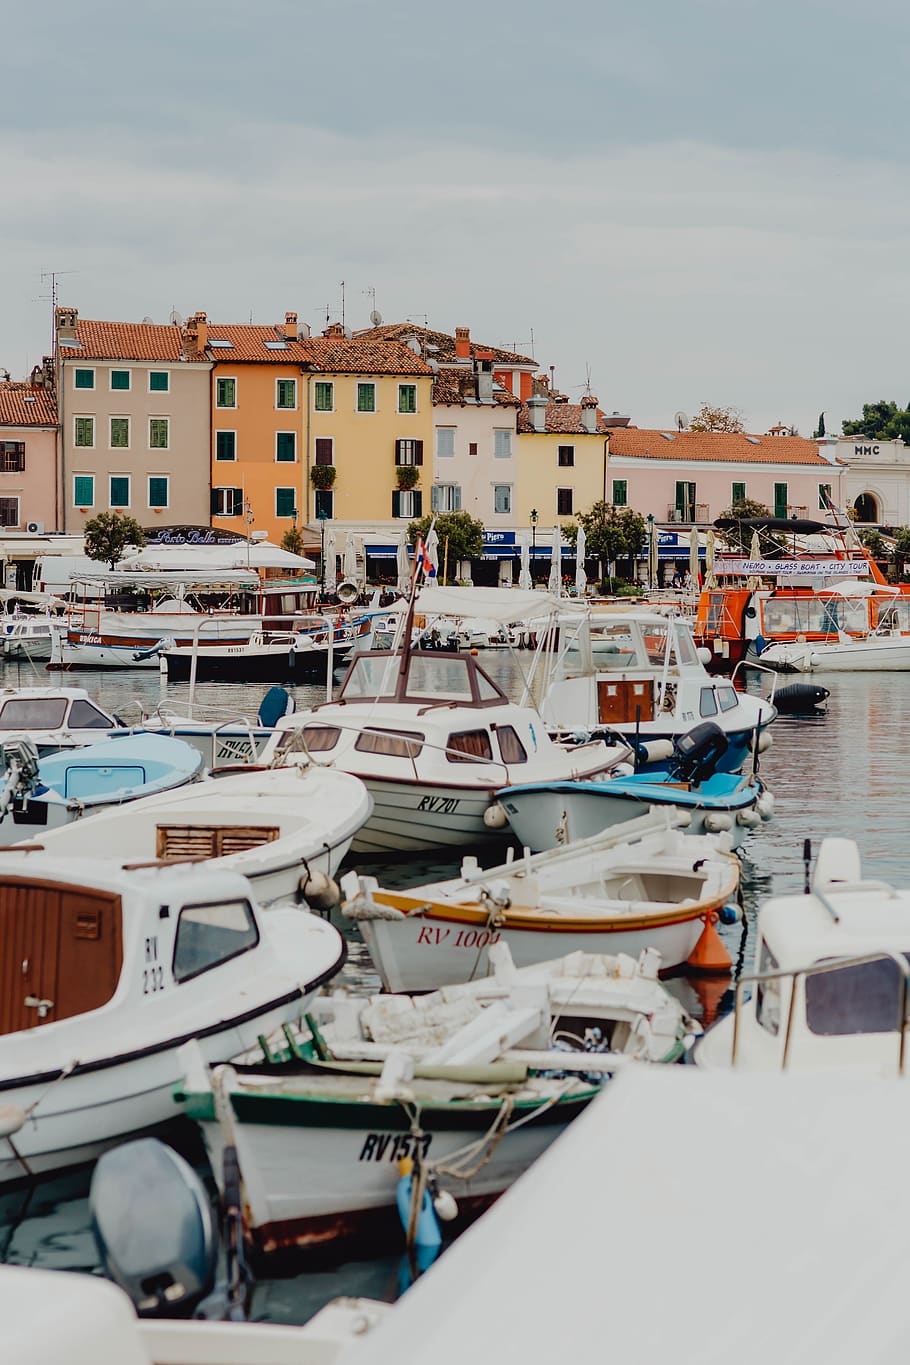 mediterráneo, pueblo, ciudad, turismo, verano, visita, pequeño, Rovinj, Croacia, embarcación náutica